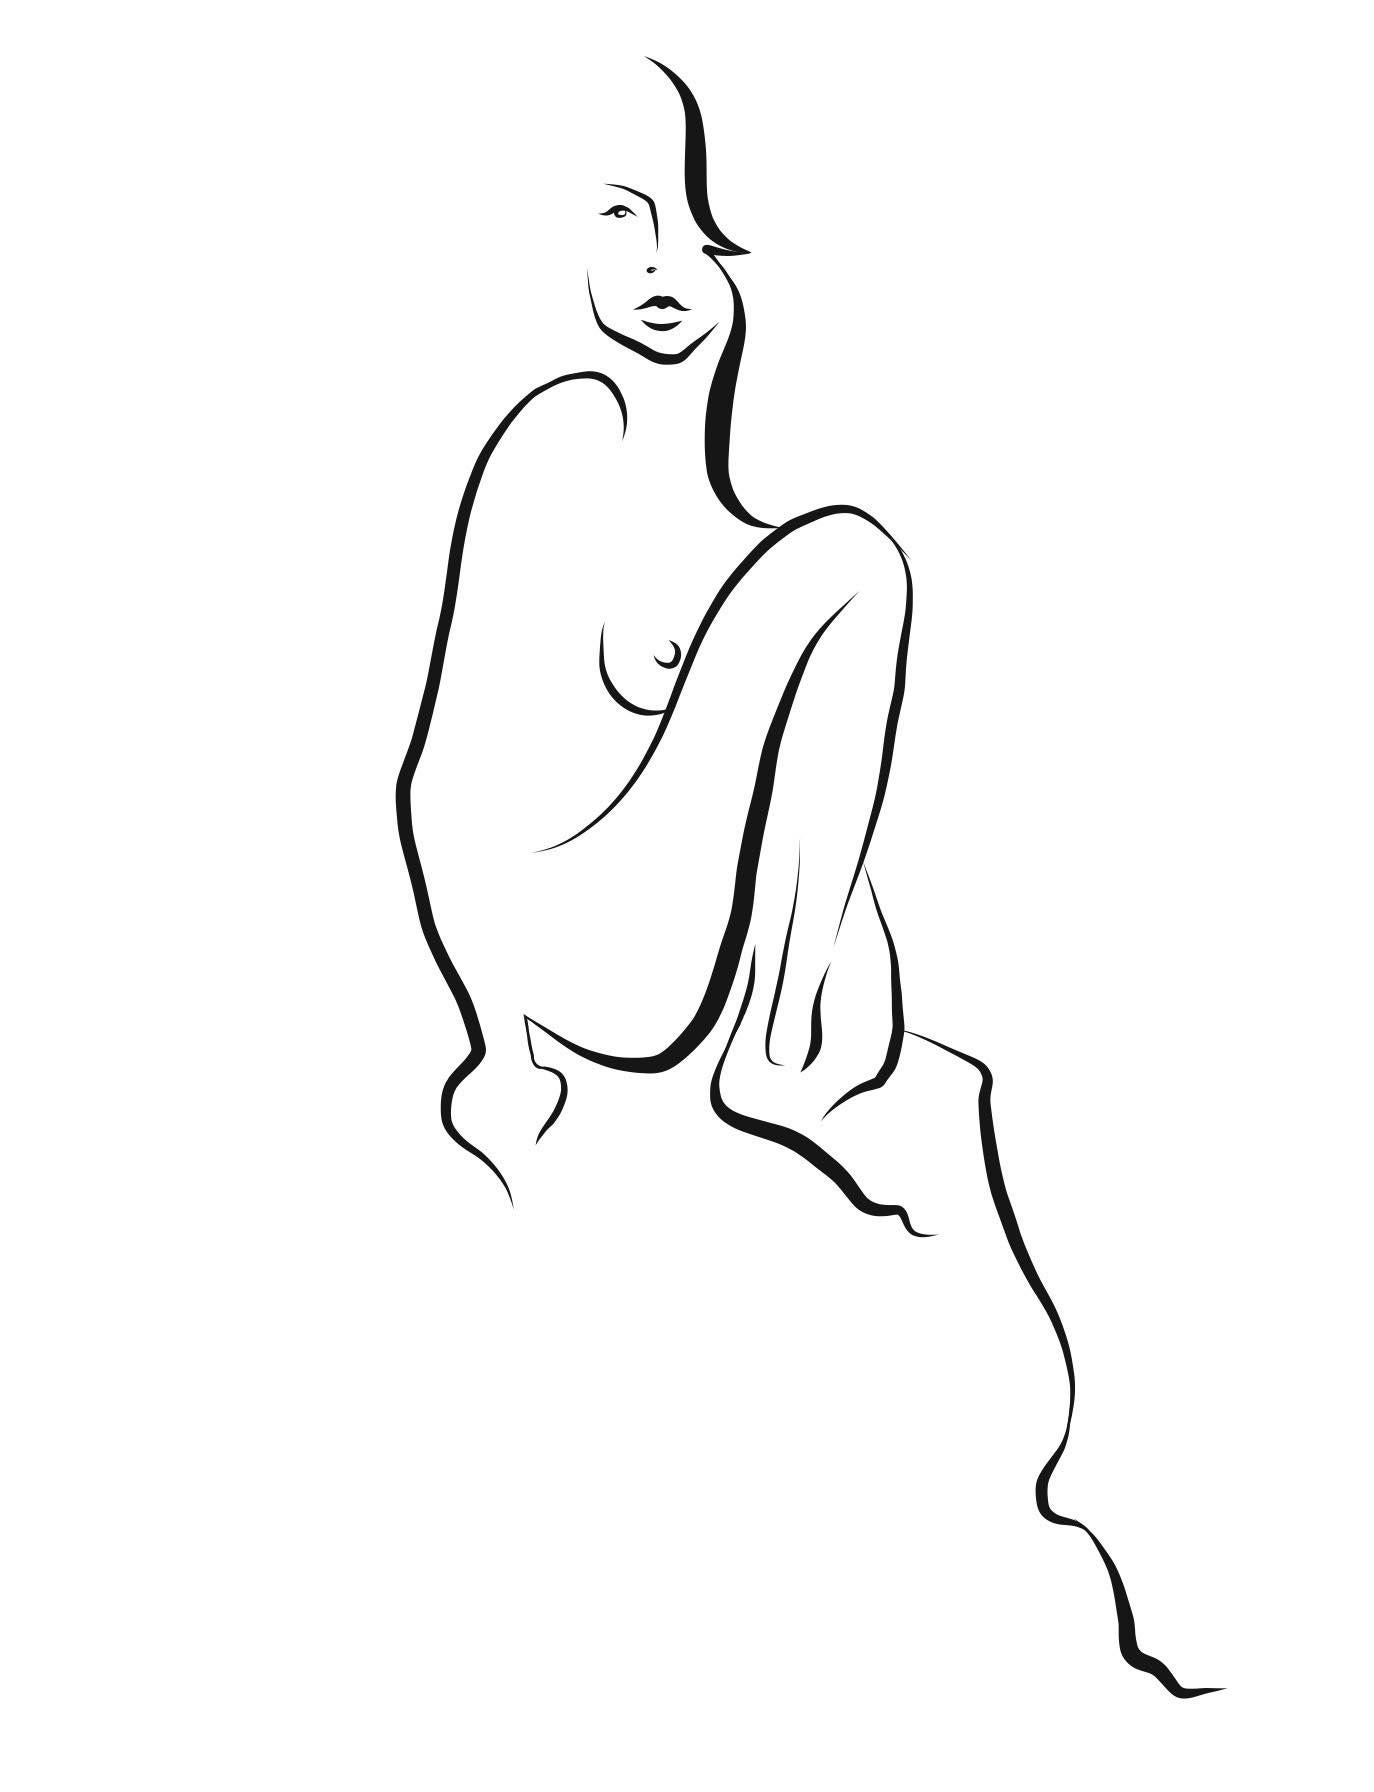 Haiku #20, 1/50 - Digital Vector Drawing Sitting Female Nude Woman Figure Knee  - Art by Michael Binkley